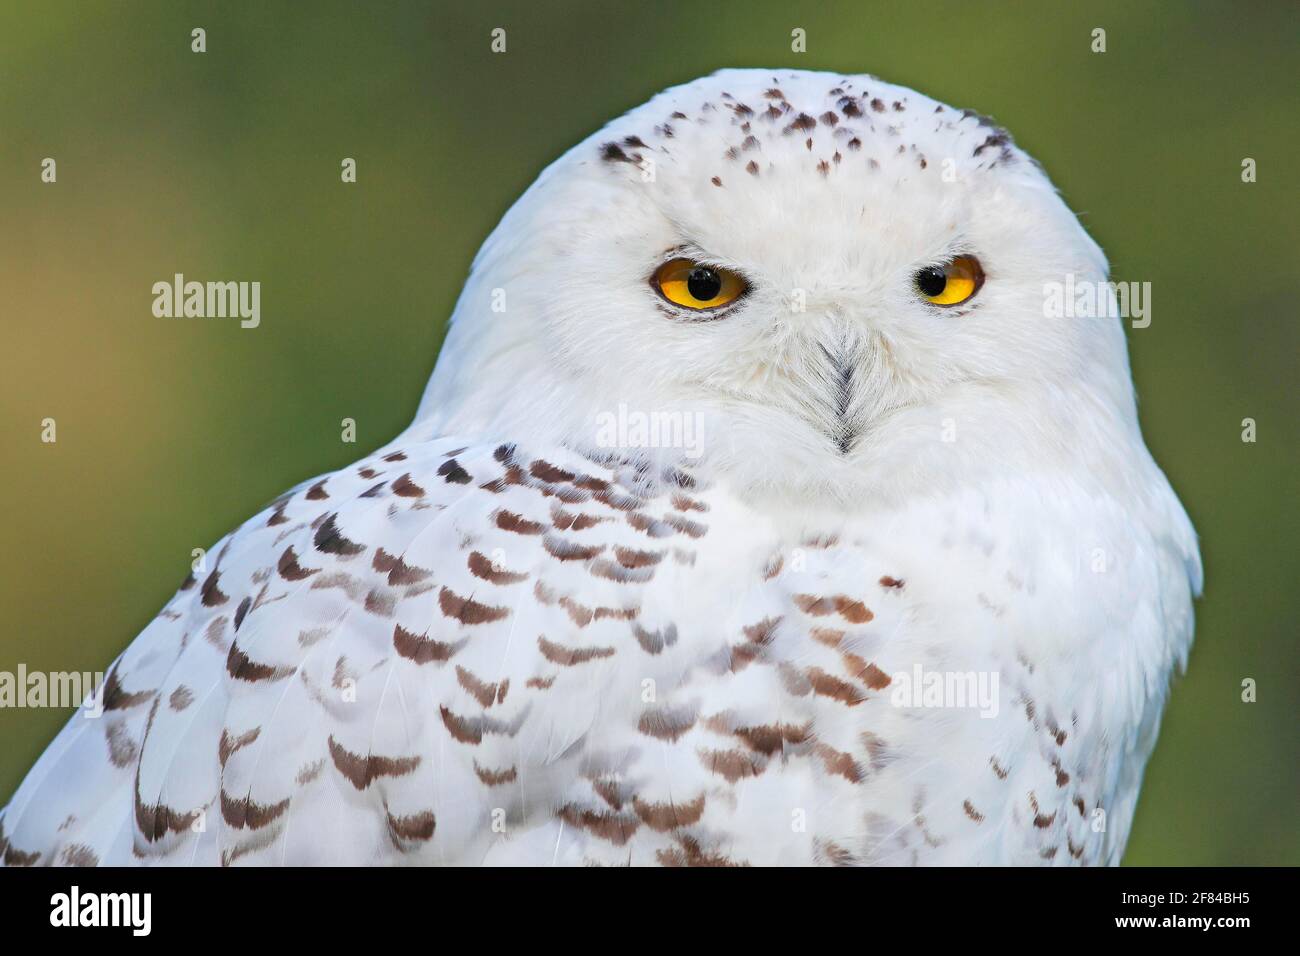 Snowy owl (Nyctea scandiaca), animal portrait, Germany Stock Photo